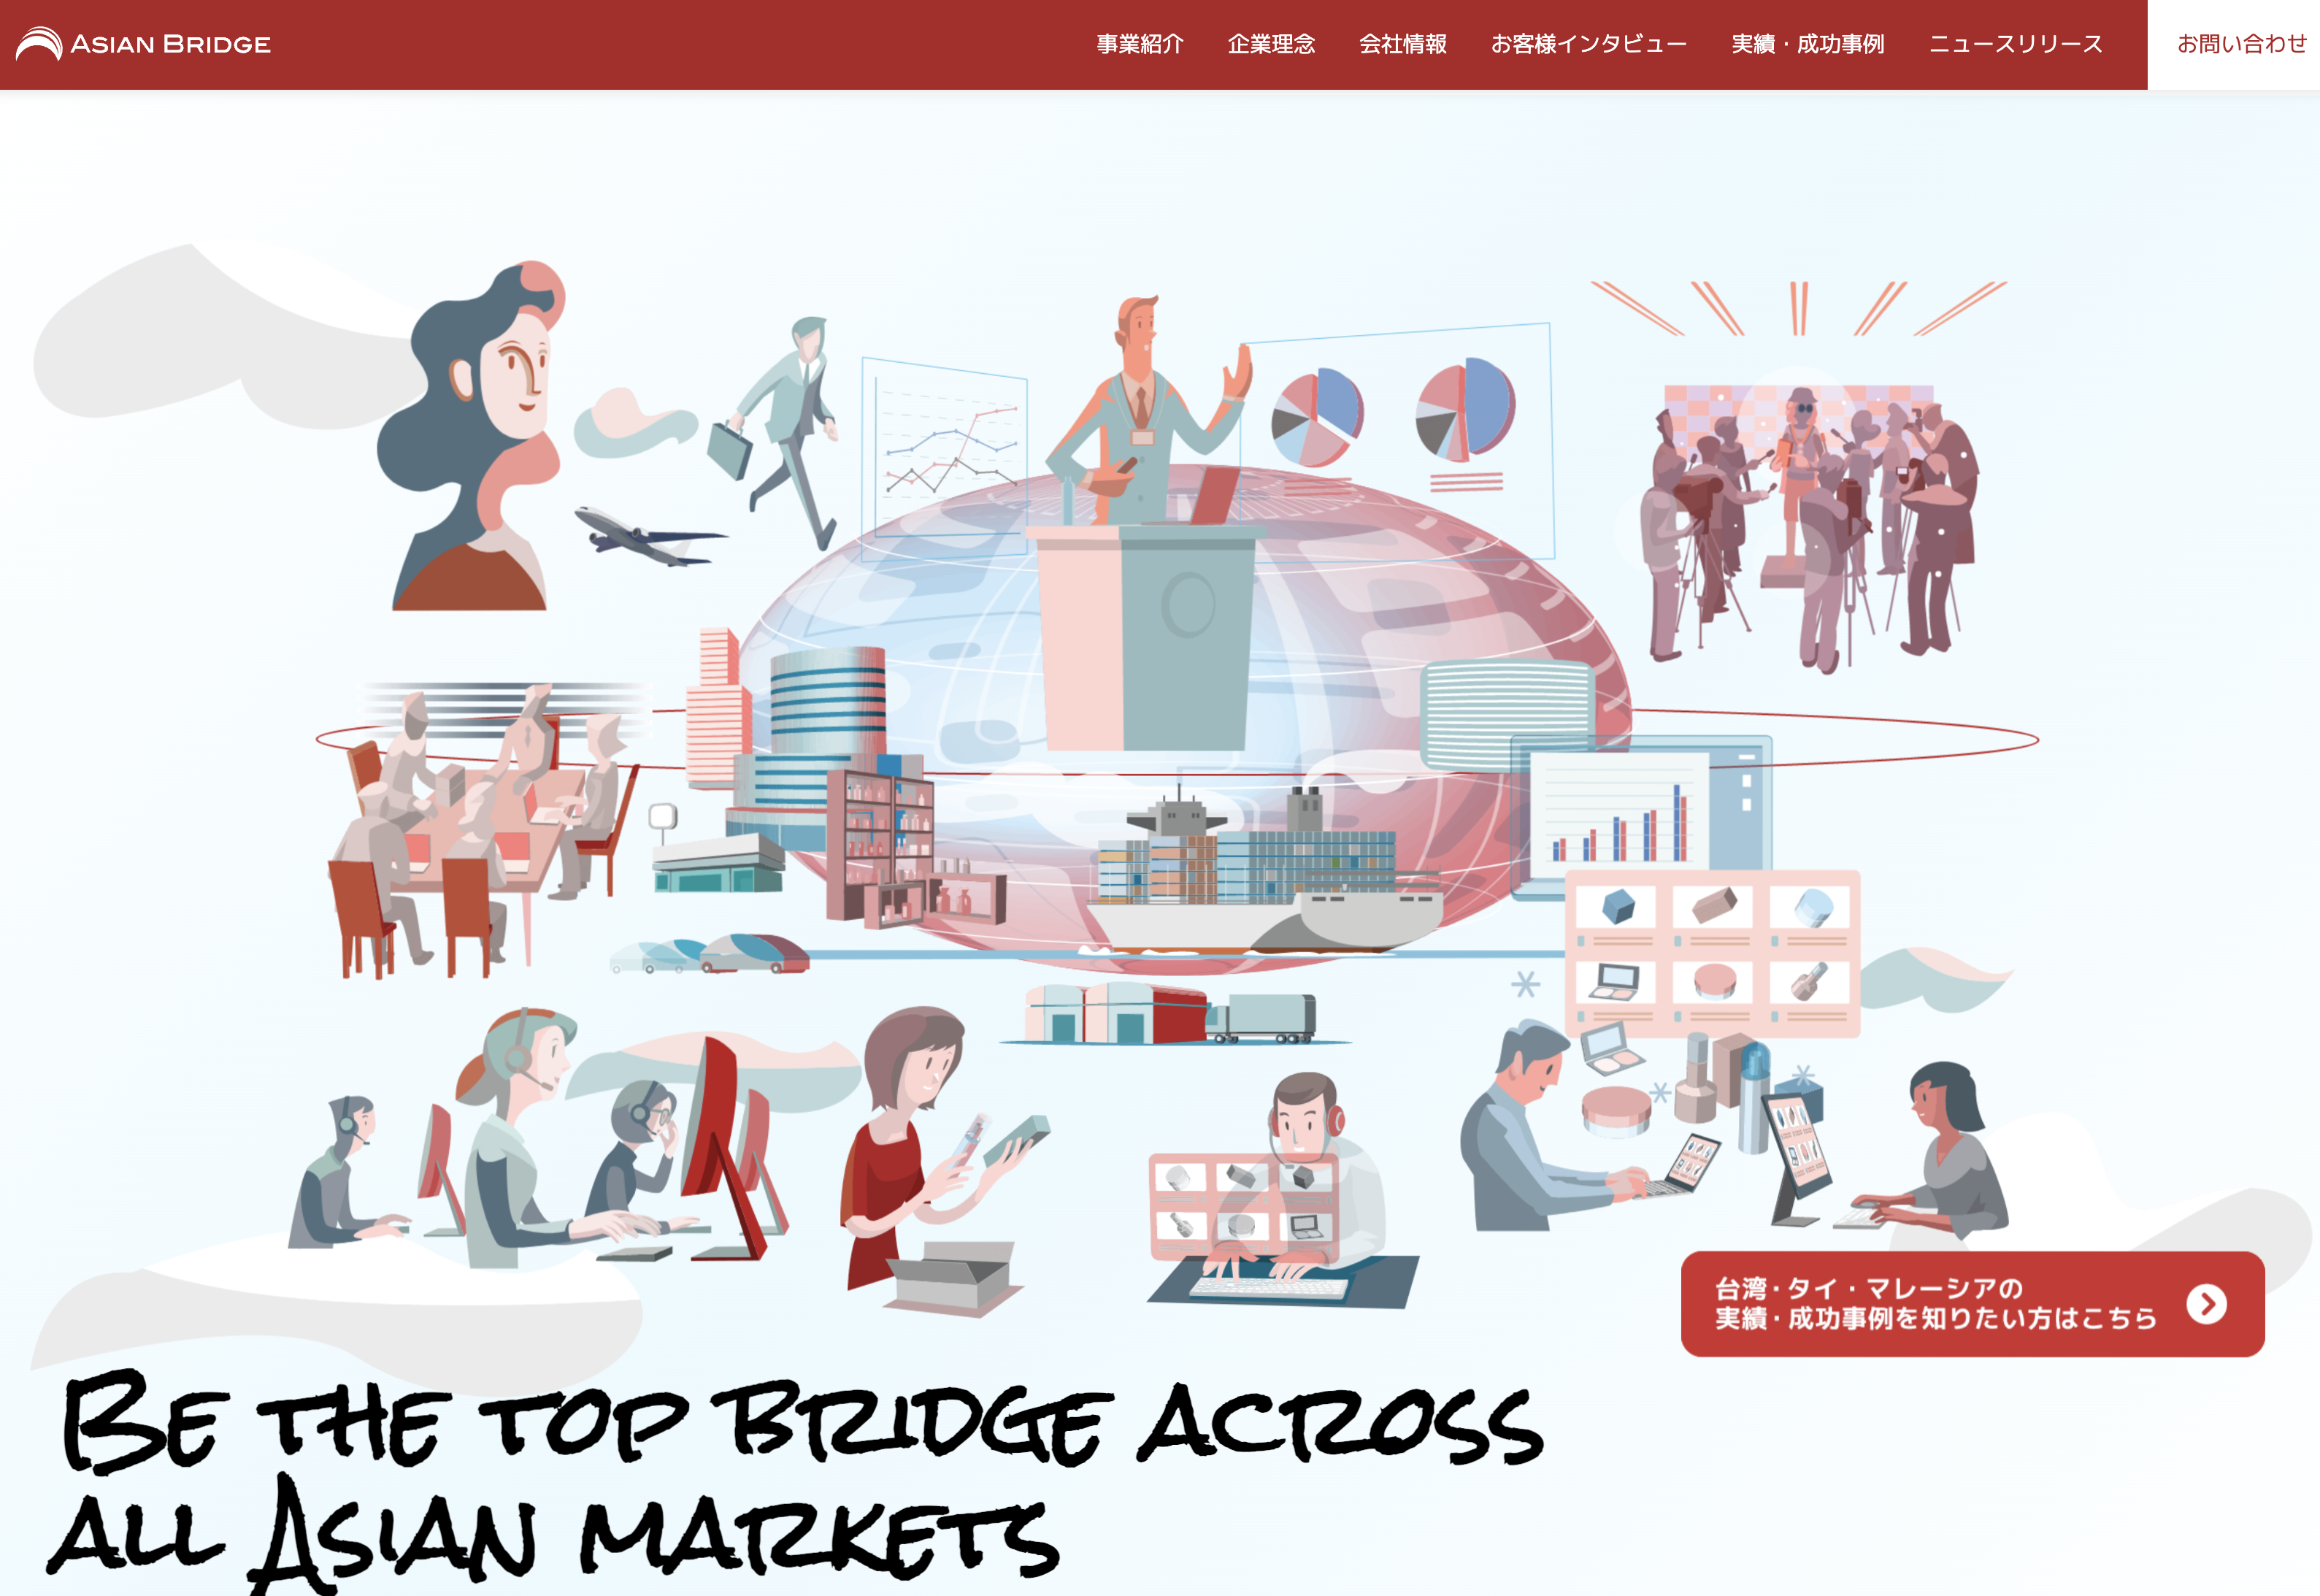 アジアンブリッジ株式会社 台湾事業のアジアンブリッジ株式会社 台湾事業:Web広告サービス